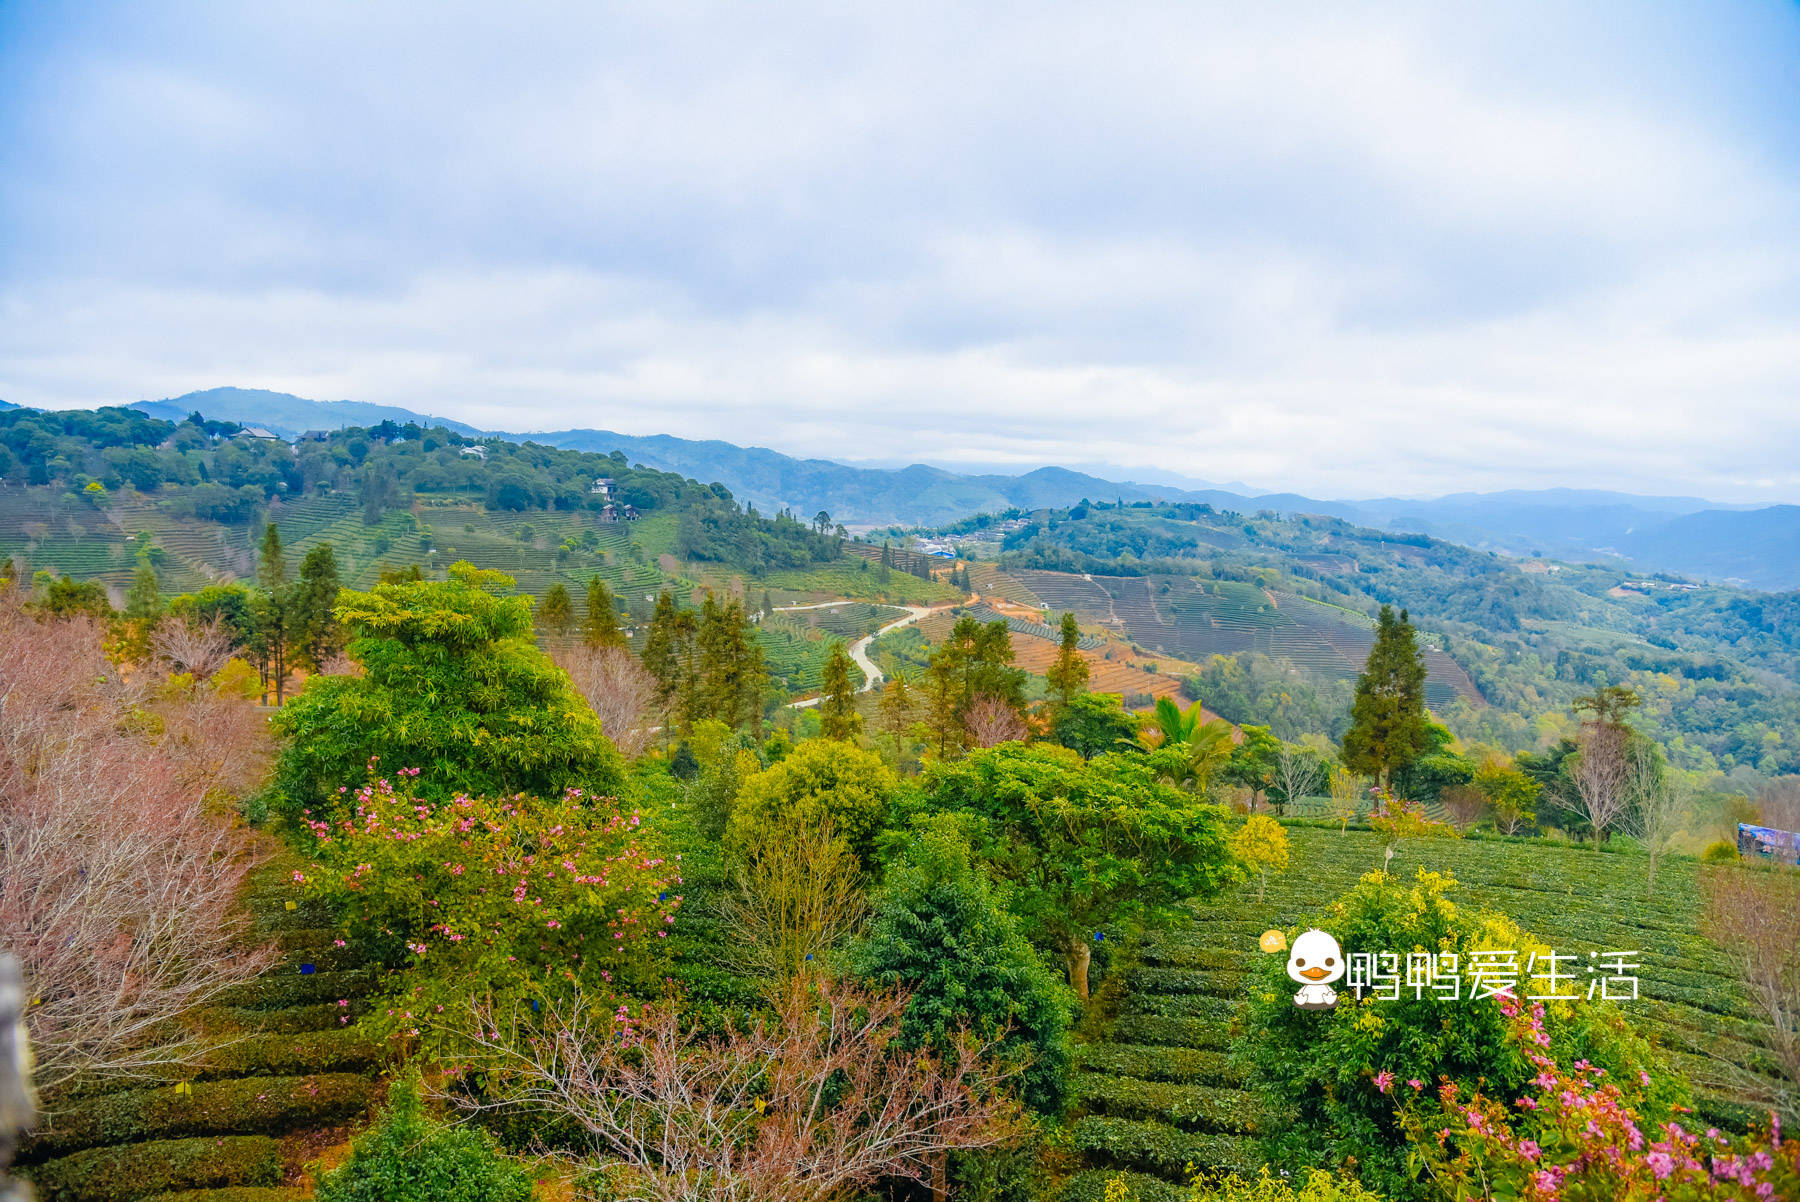 普洱营盘山上有座茶博苑，万亩茶山风光秀丽，游客可体验制茶乐趣